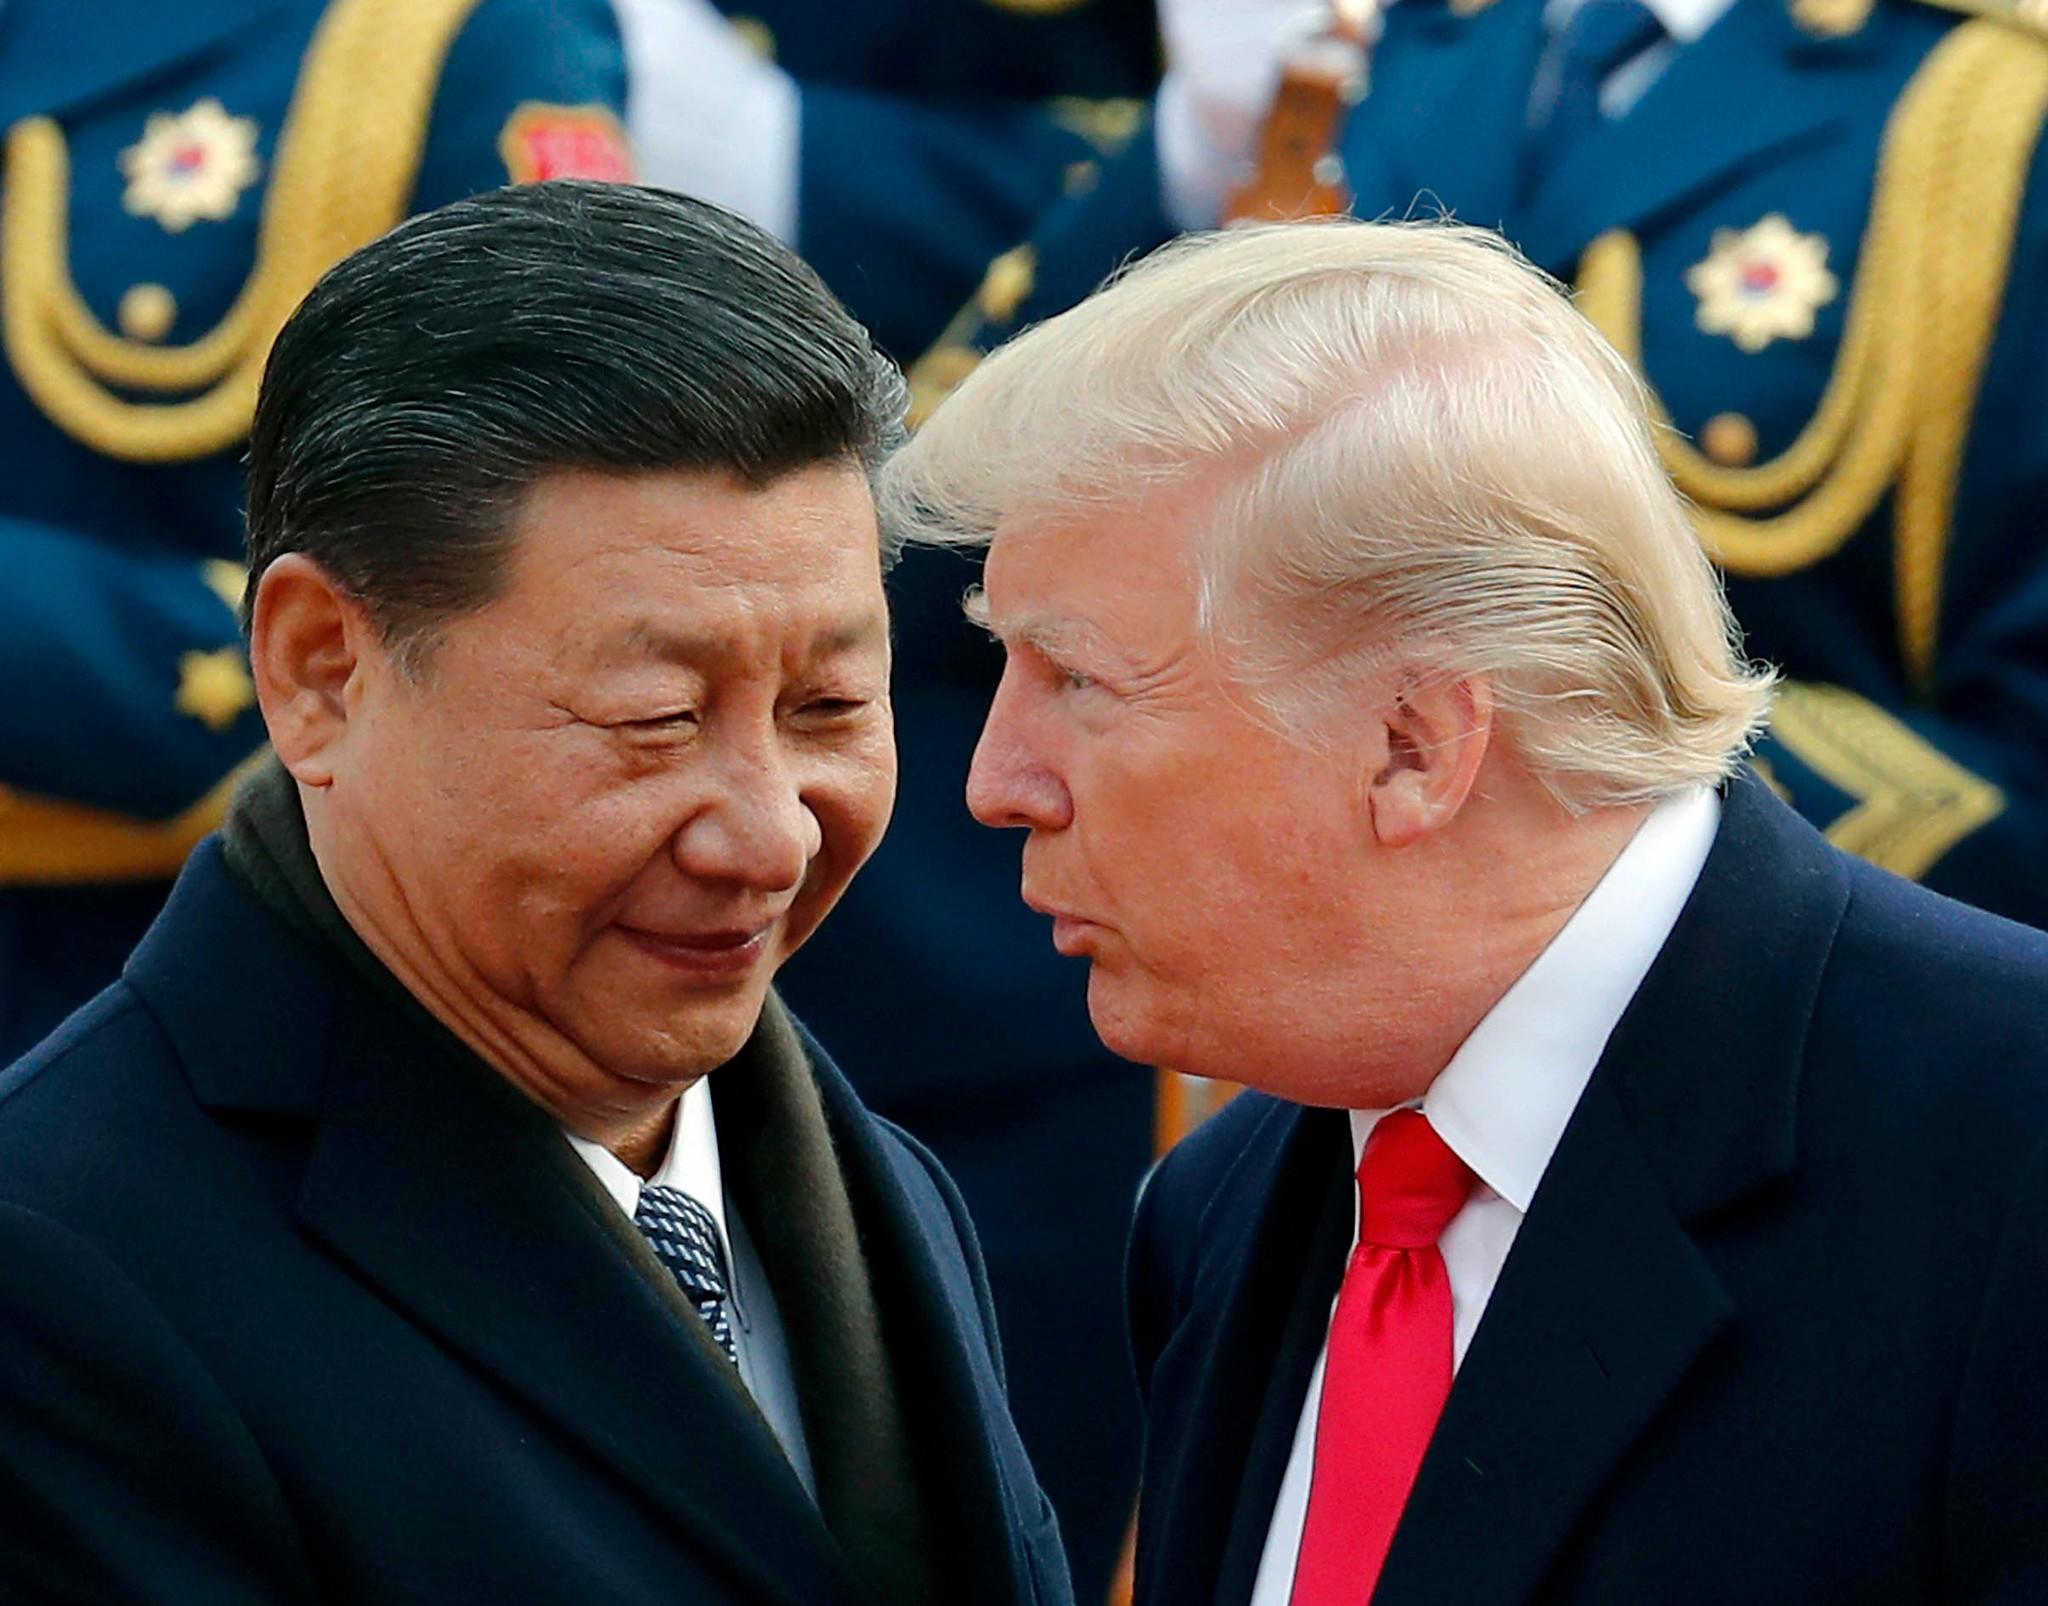 Ông Tập gọi ông Trump là bạn giữa thương chiến Mỹ-Trung